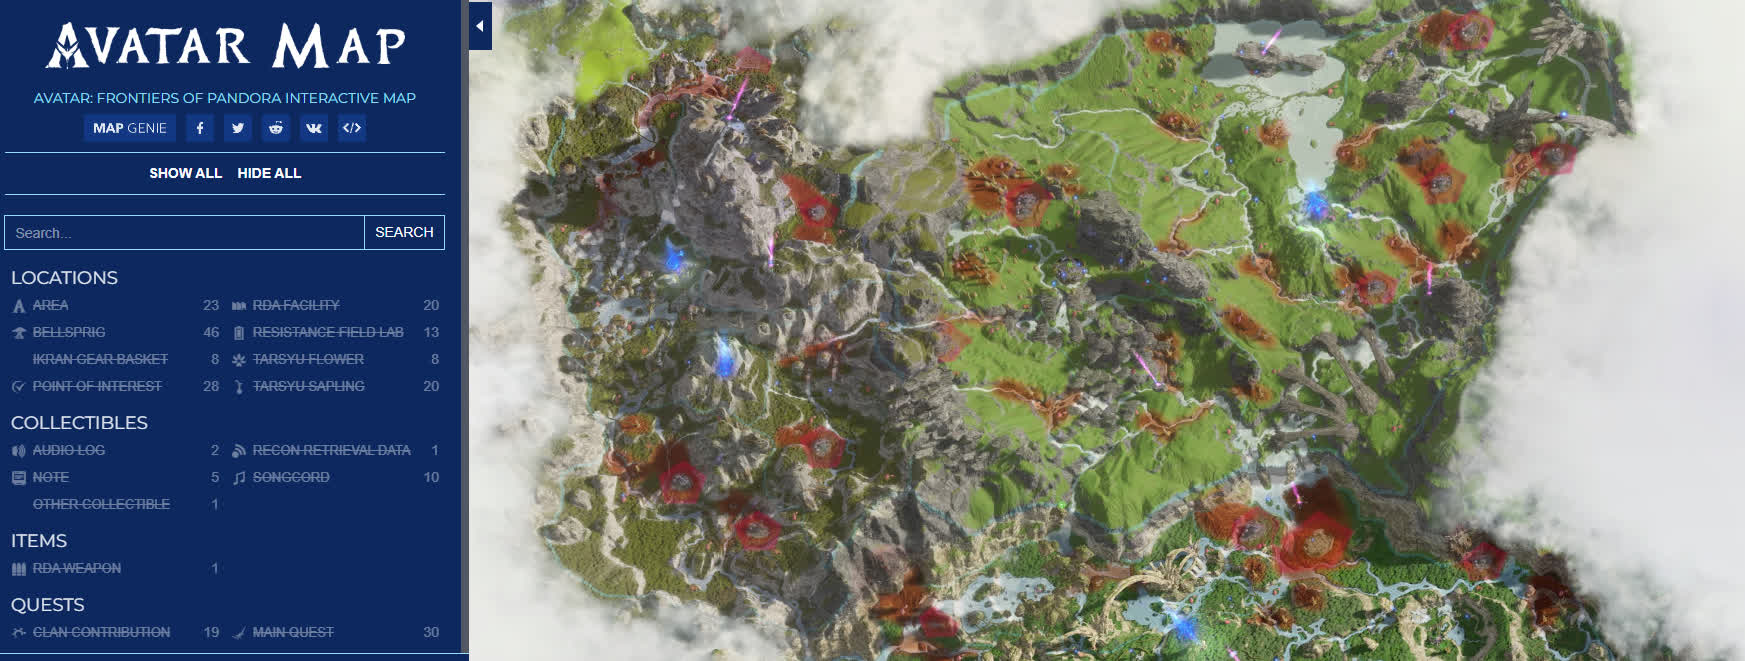 Интерактивная карта Avatar: Frontiers of Pandora — записки, разведданные, аккорды